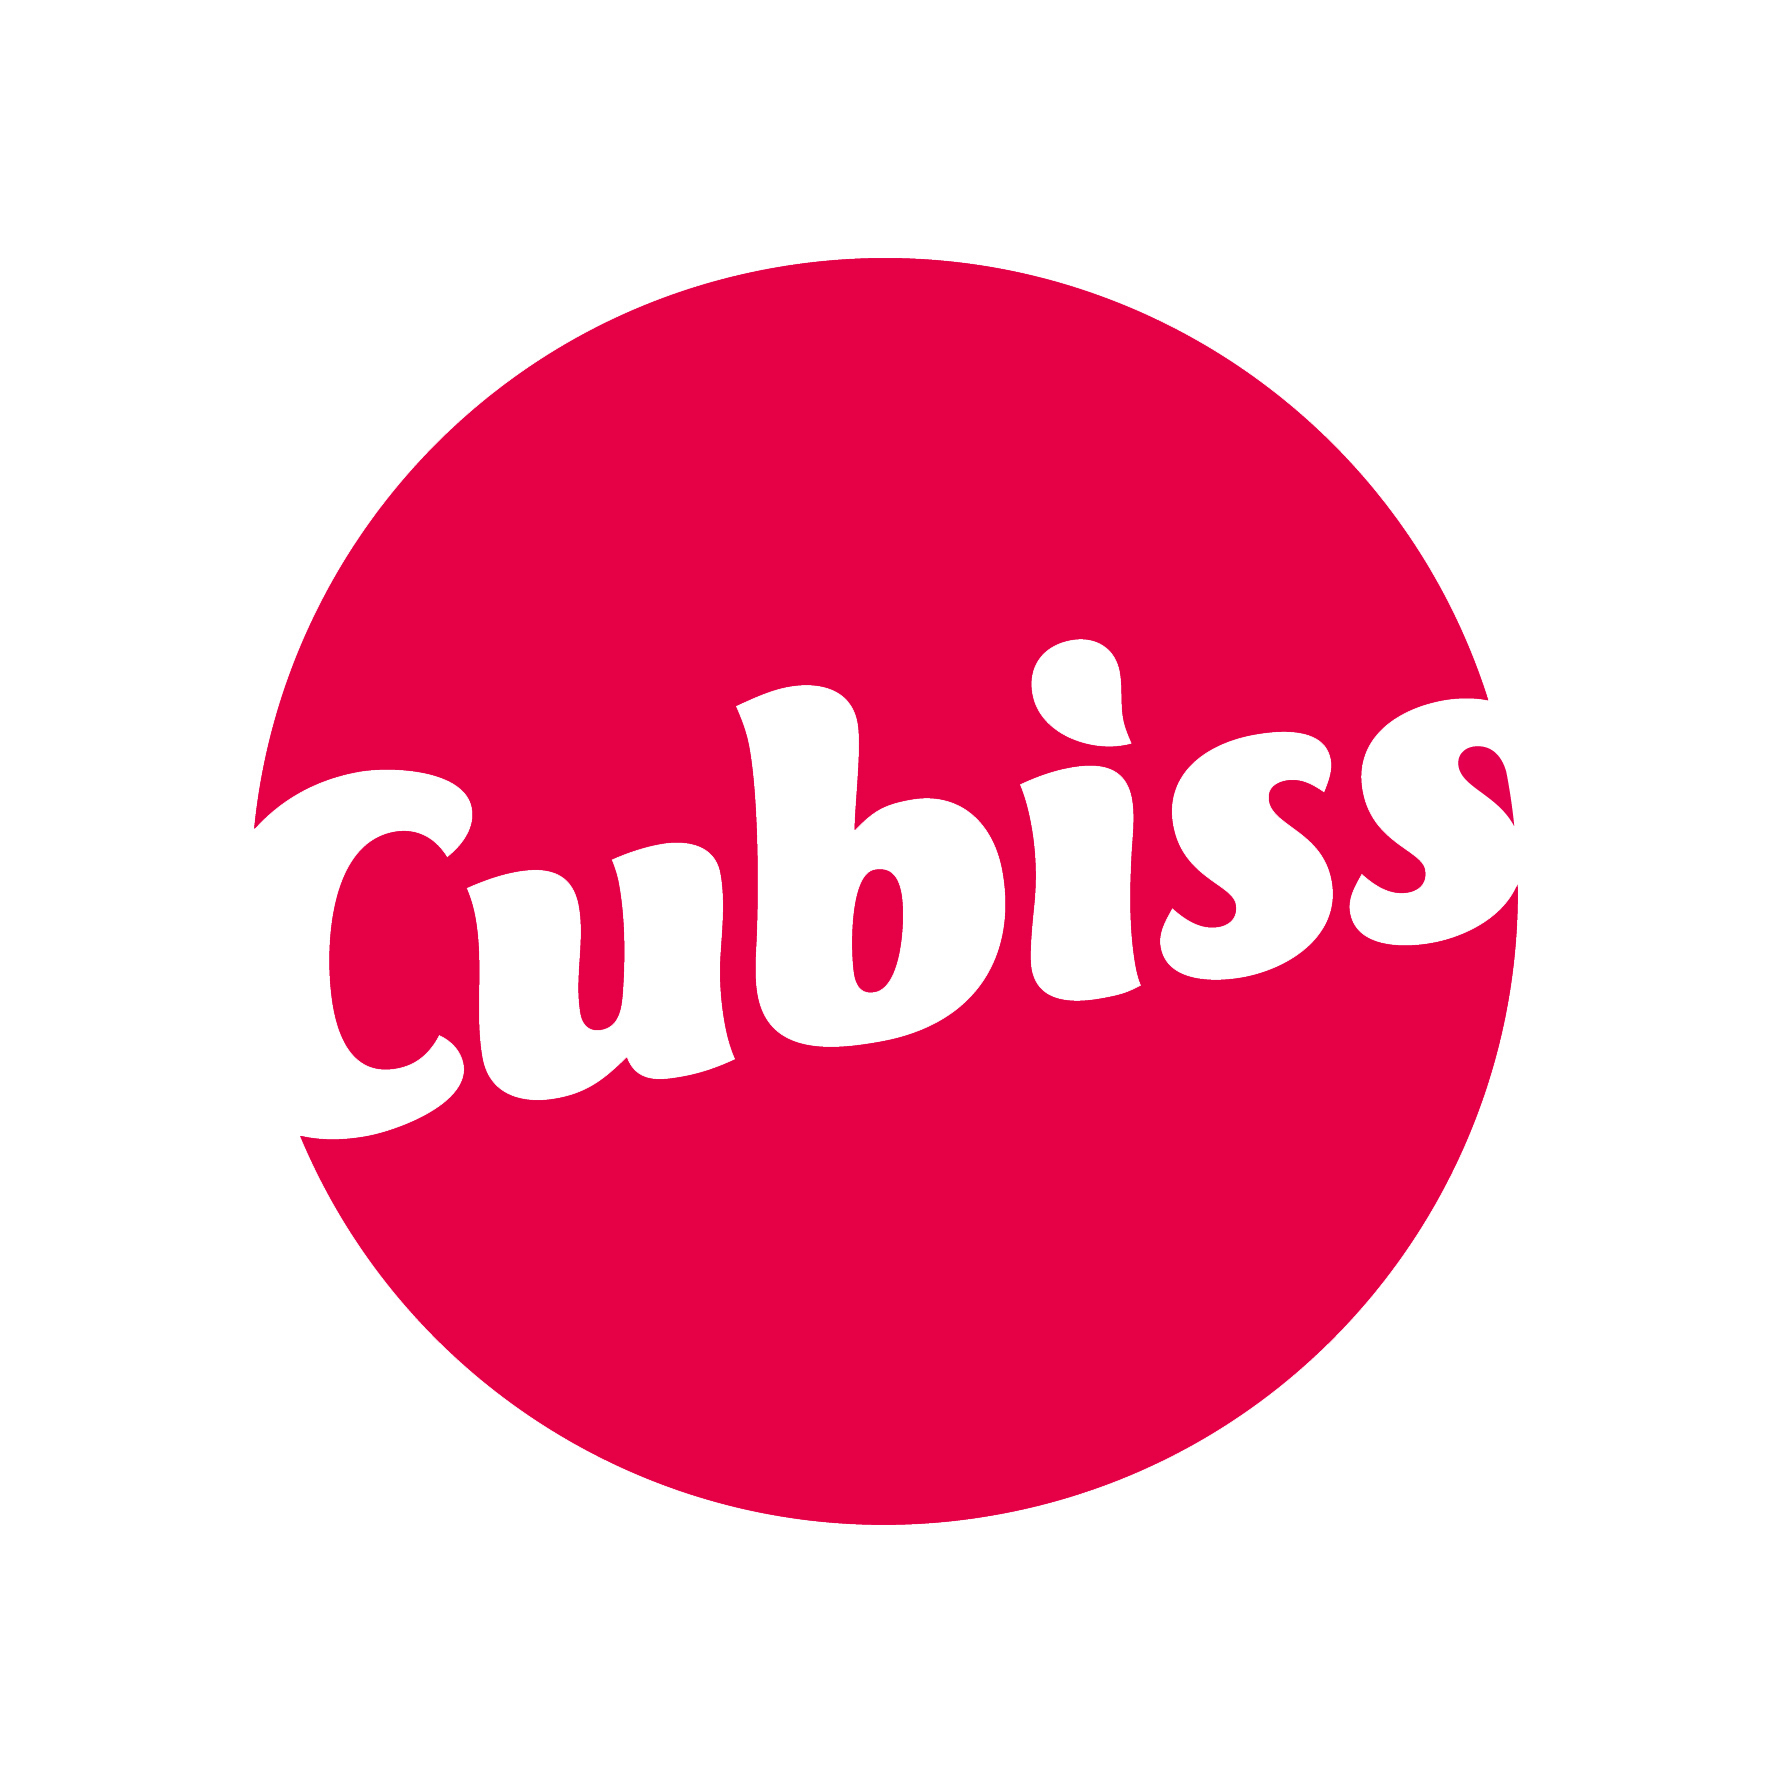 Cubiss Plus